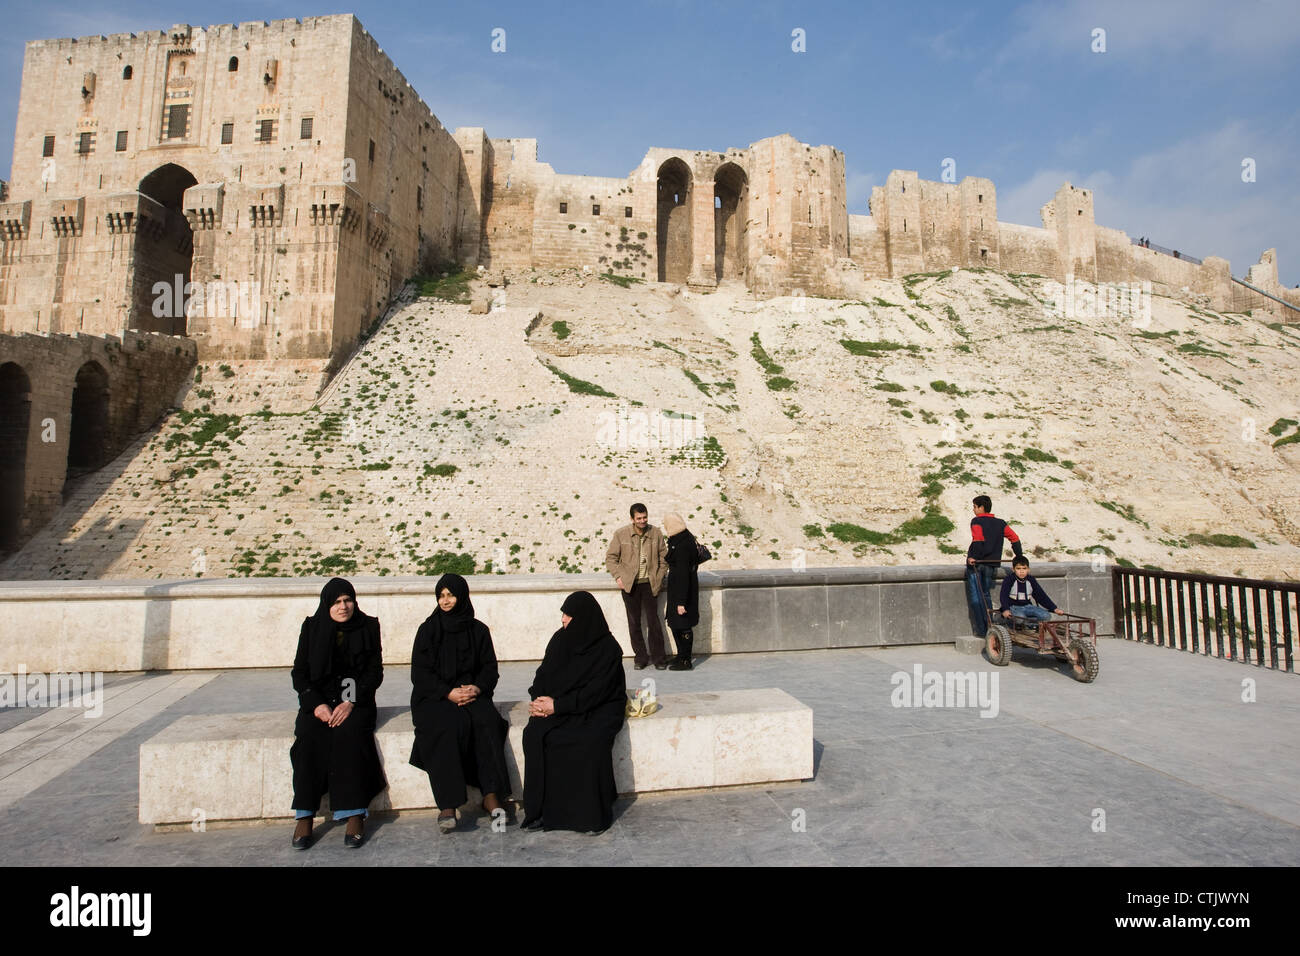 Les femmes musulmanes assis devant la citadelle d'Alep, en Syrie Banque D'Images